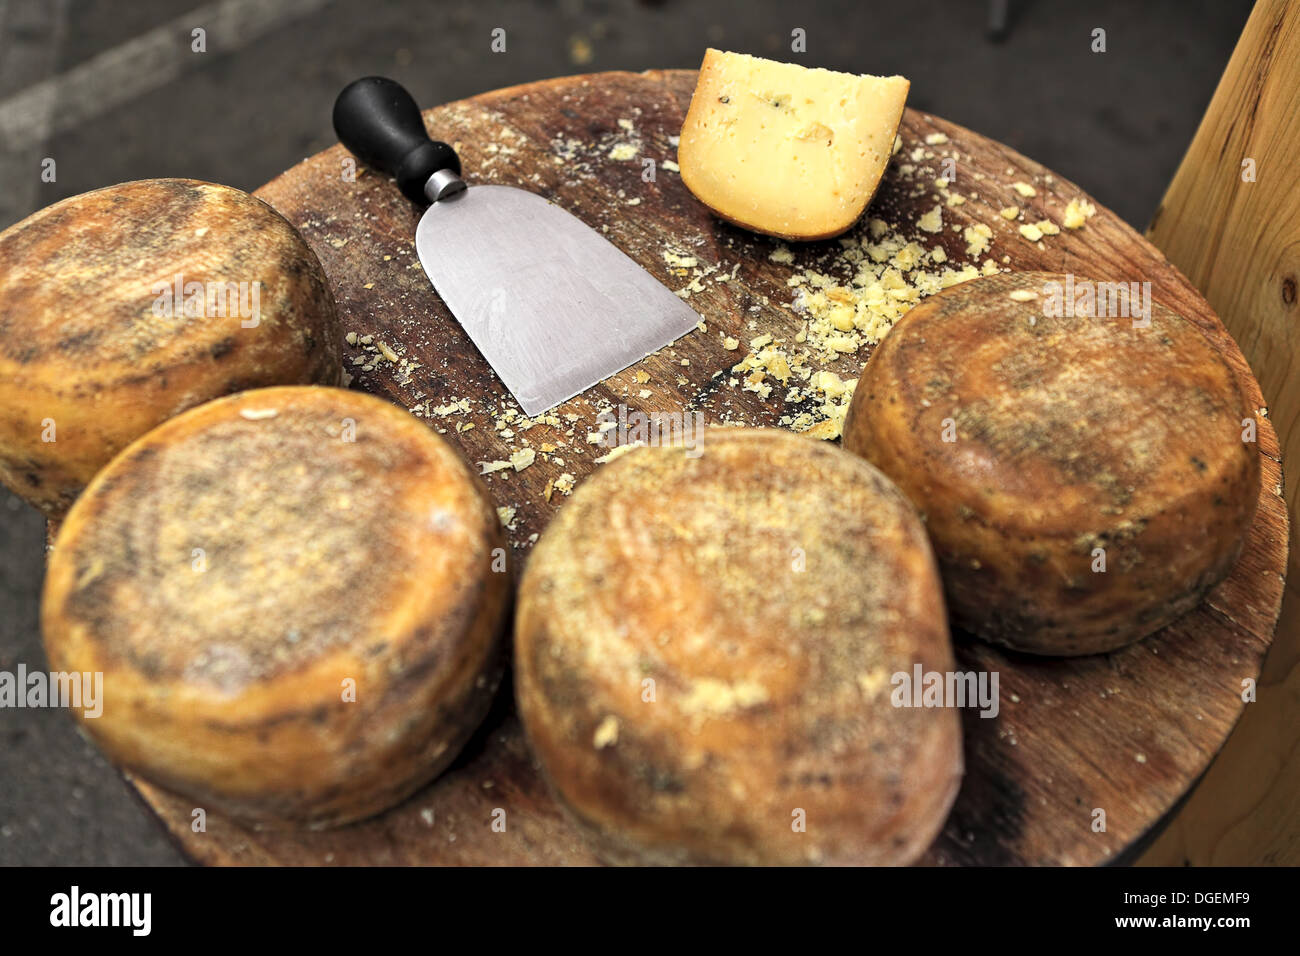 Les petites roues de fromage pecorino et couteau sur table en bois. Banque D'Images